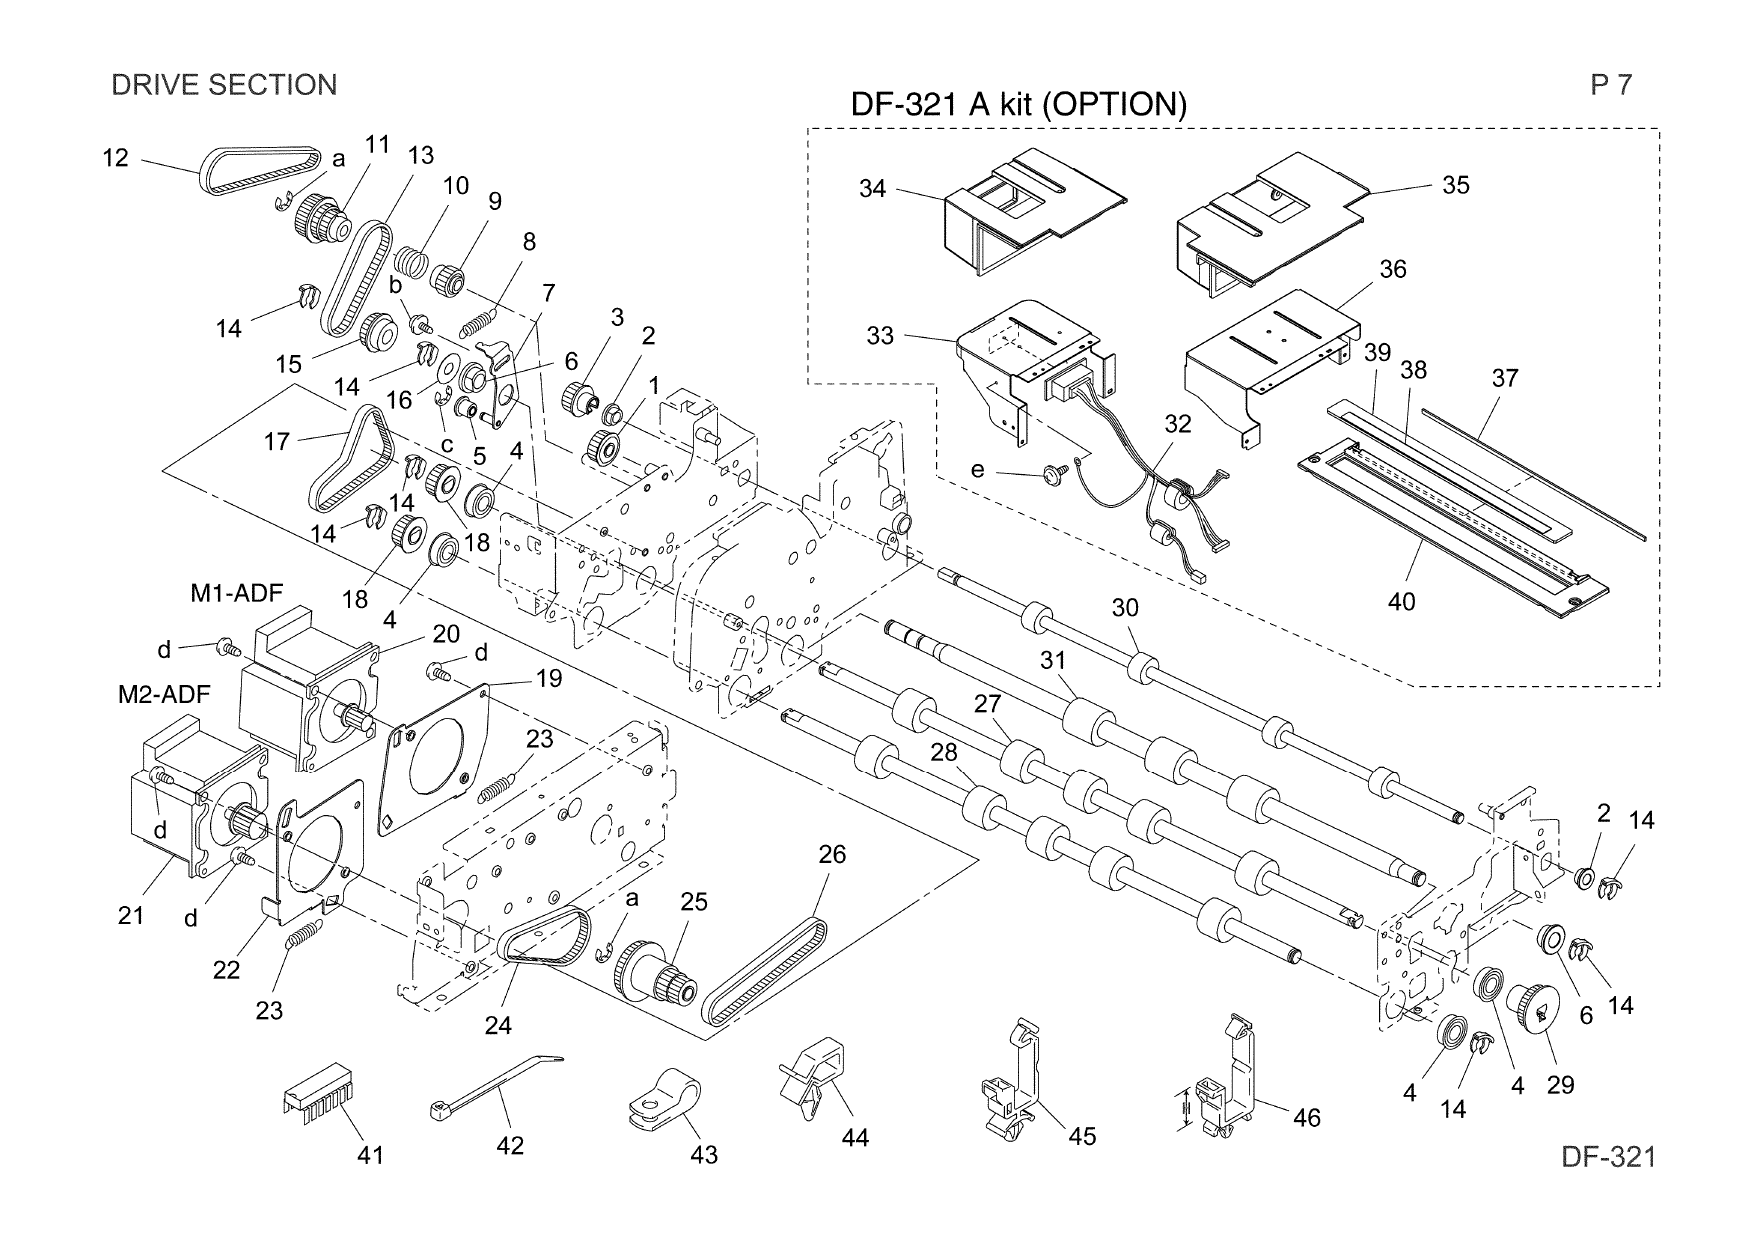 Konica-Minolta Options DF-321 AFR-19 Parts Manual-6